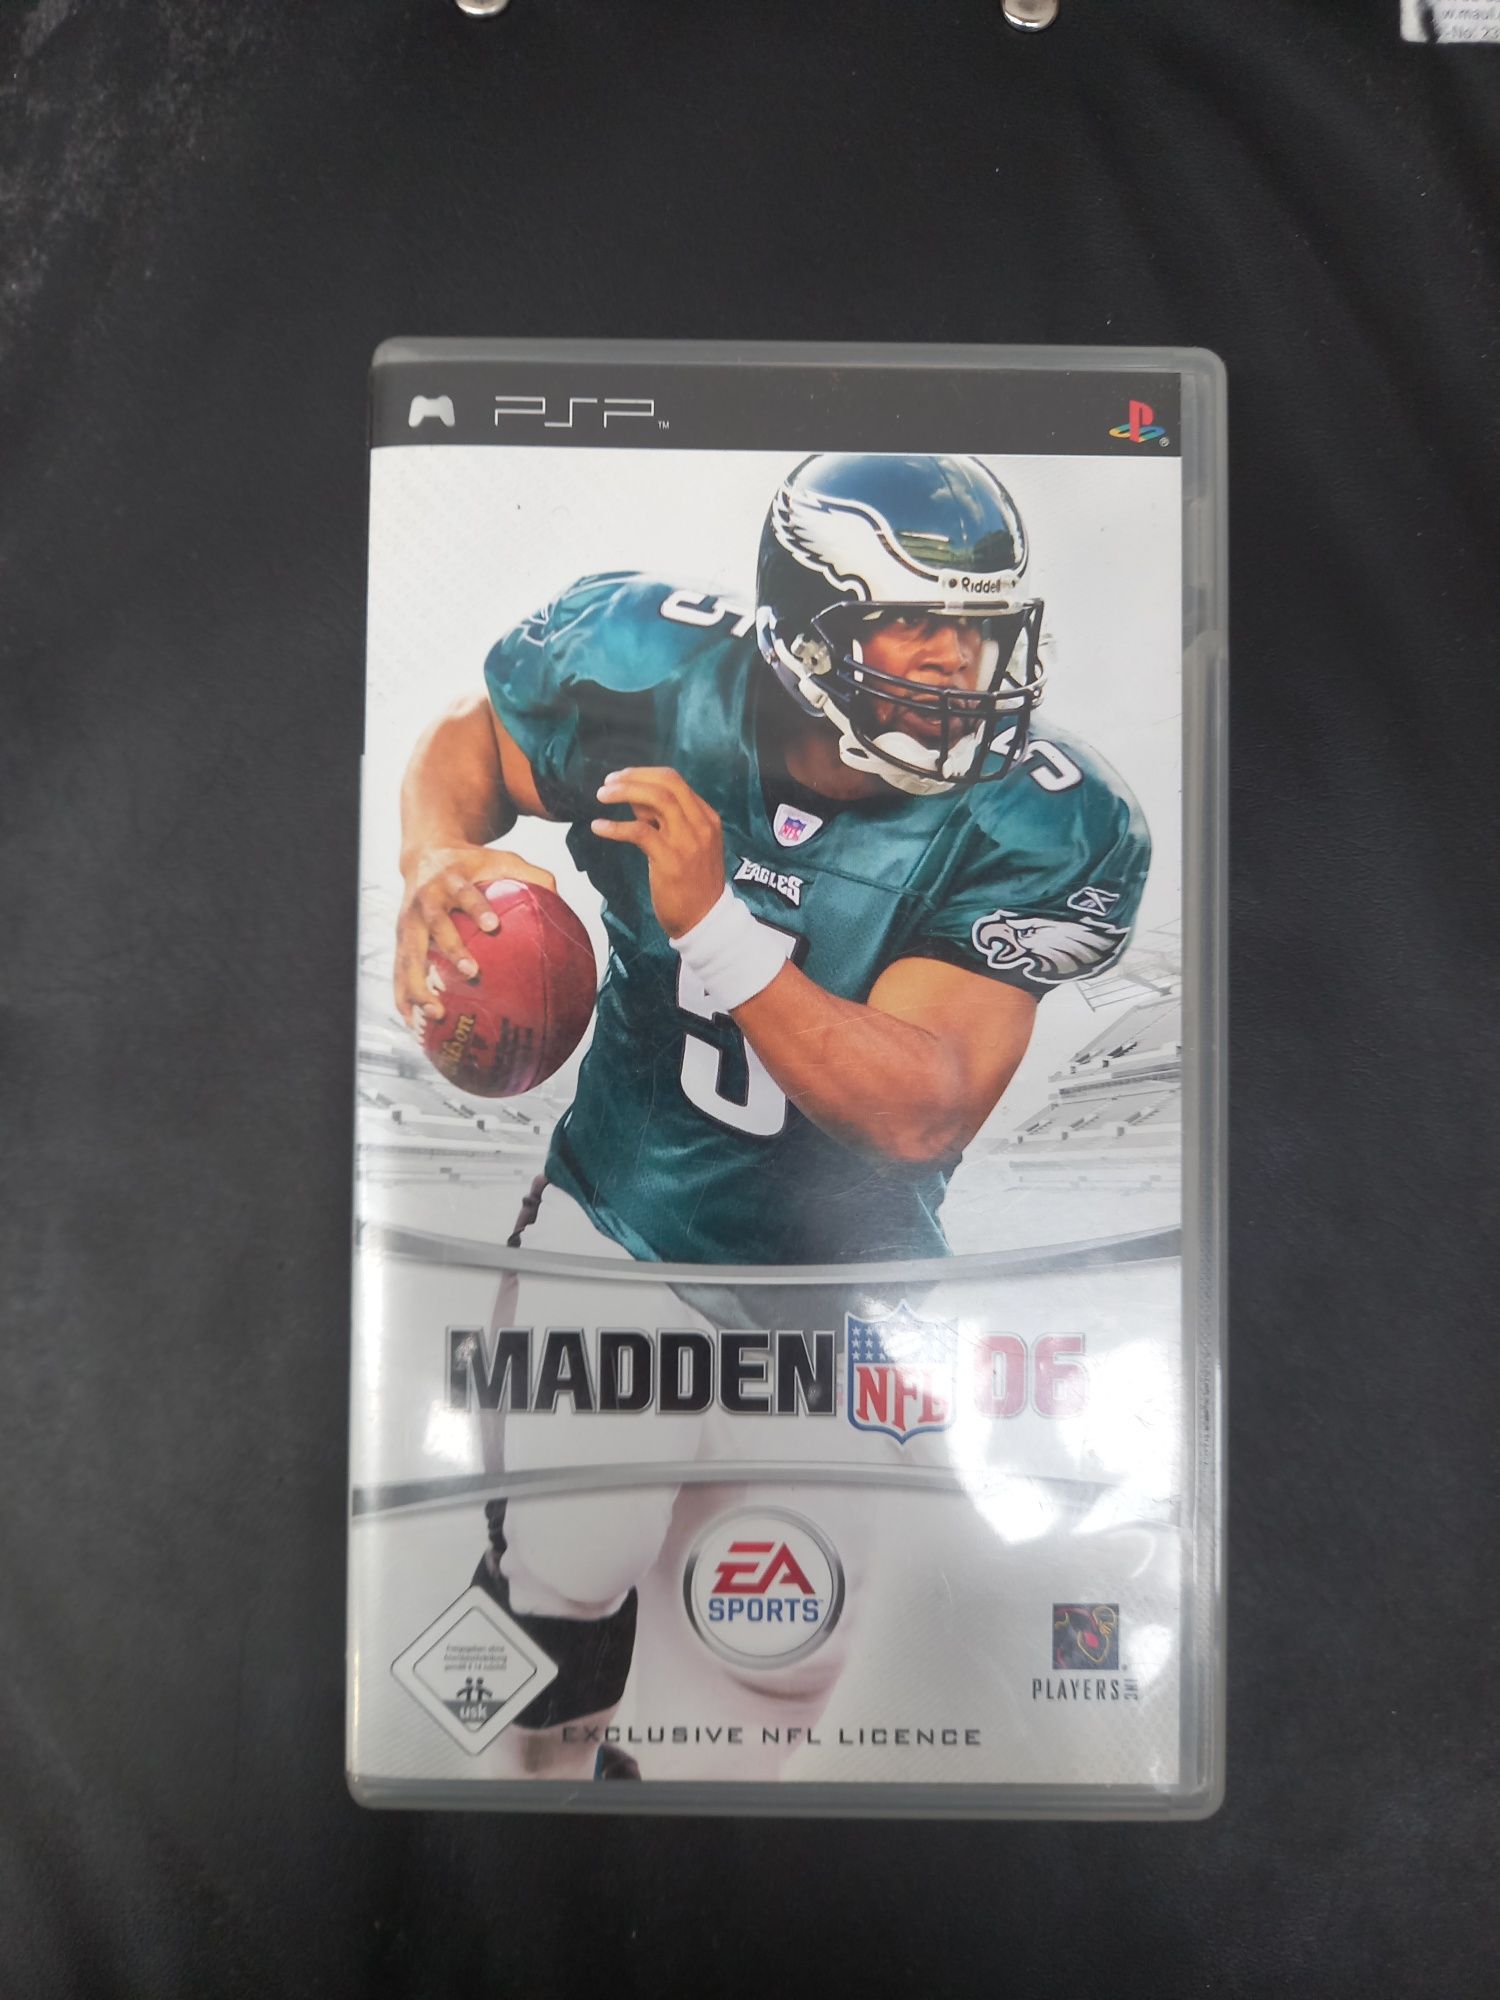 Gra Madden NFL 06 PSP